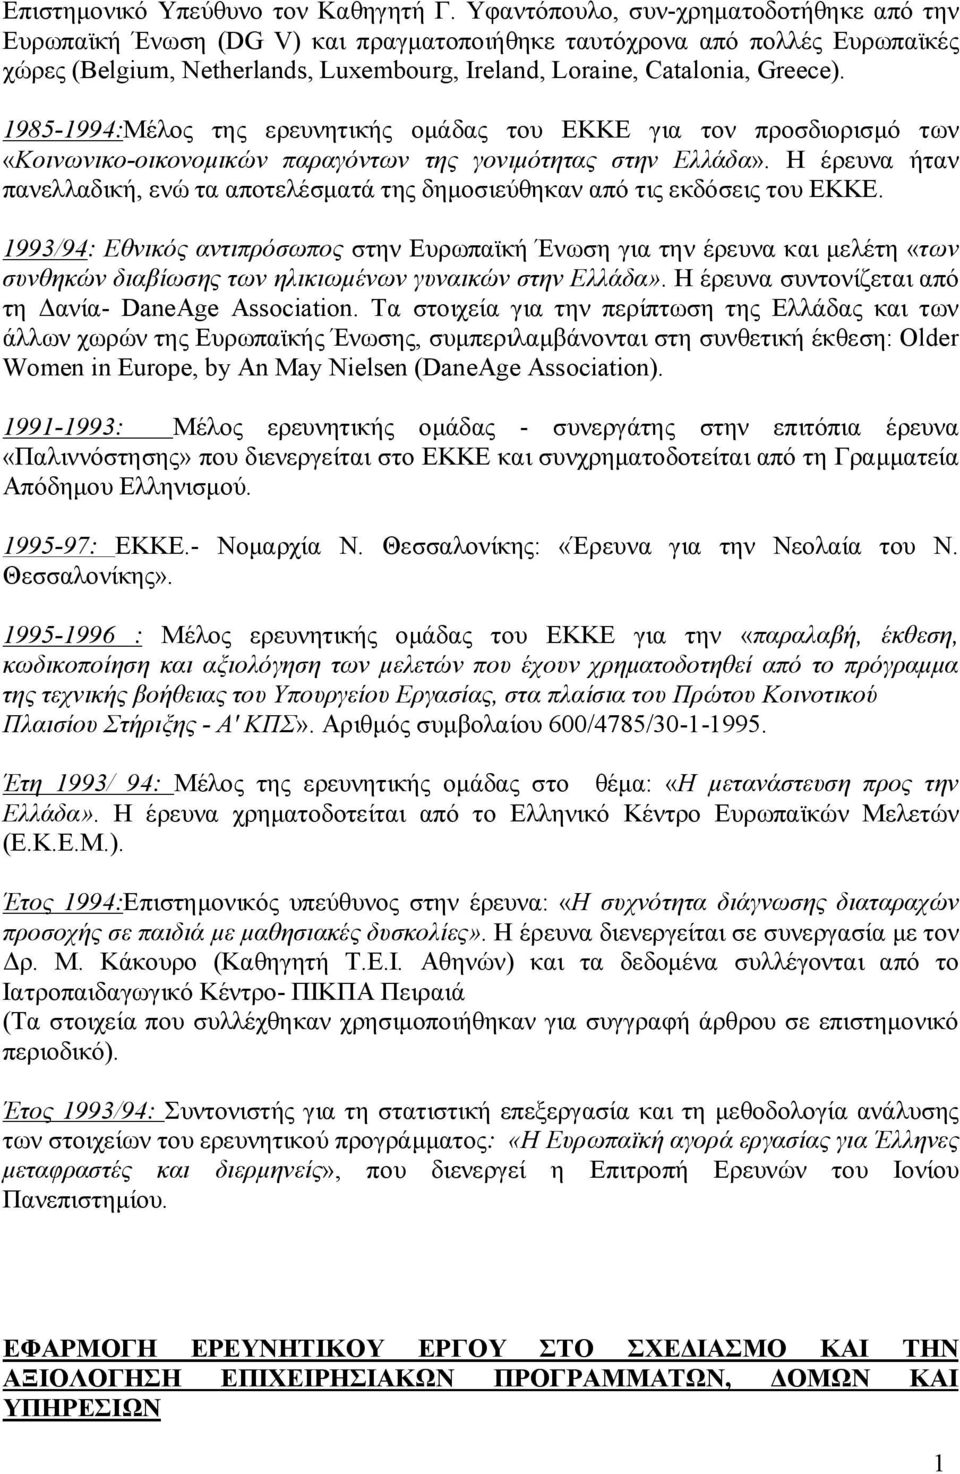 1985-1994:Μέλος της ερευνητικής ομάδας του ΕΚΚΕ για τον προσδιορισμό των «Κοινωνικο-οικονομικών παραγόντων της γονιμότητας στην Ελλάδα».